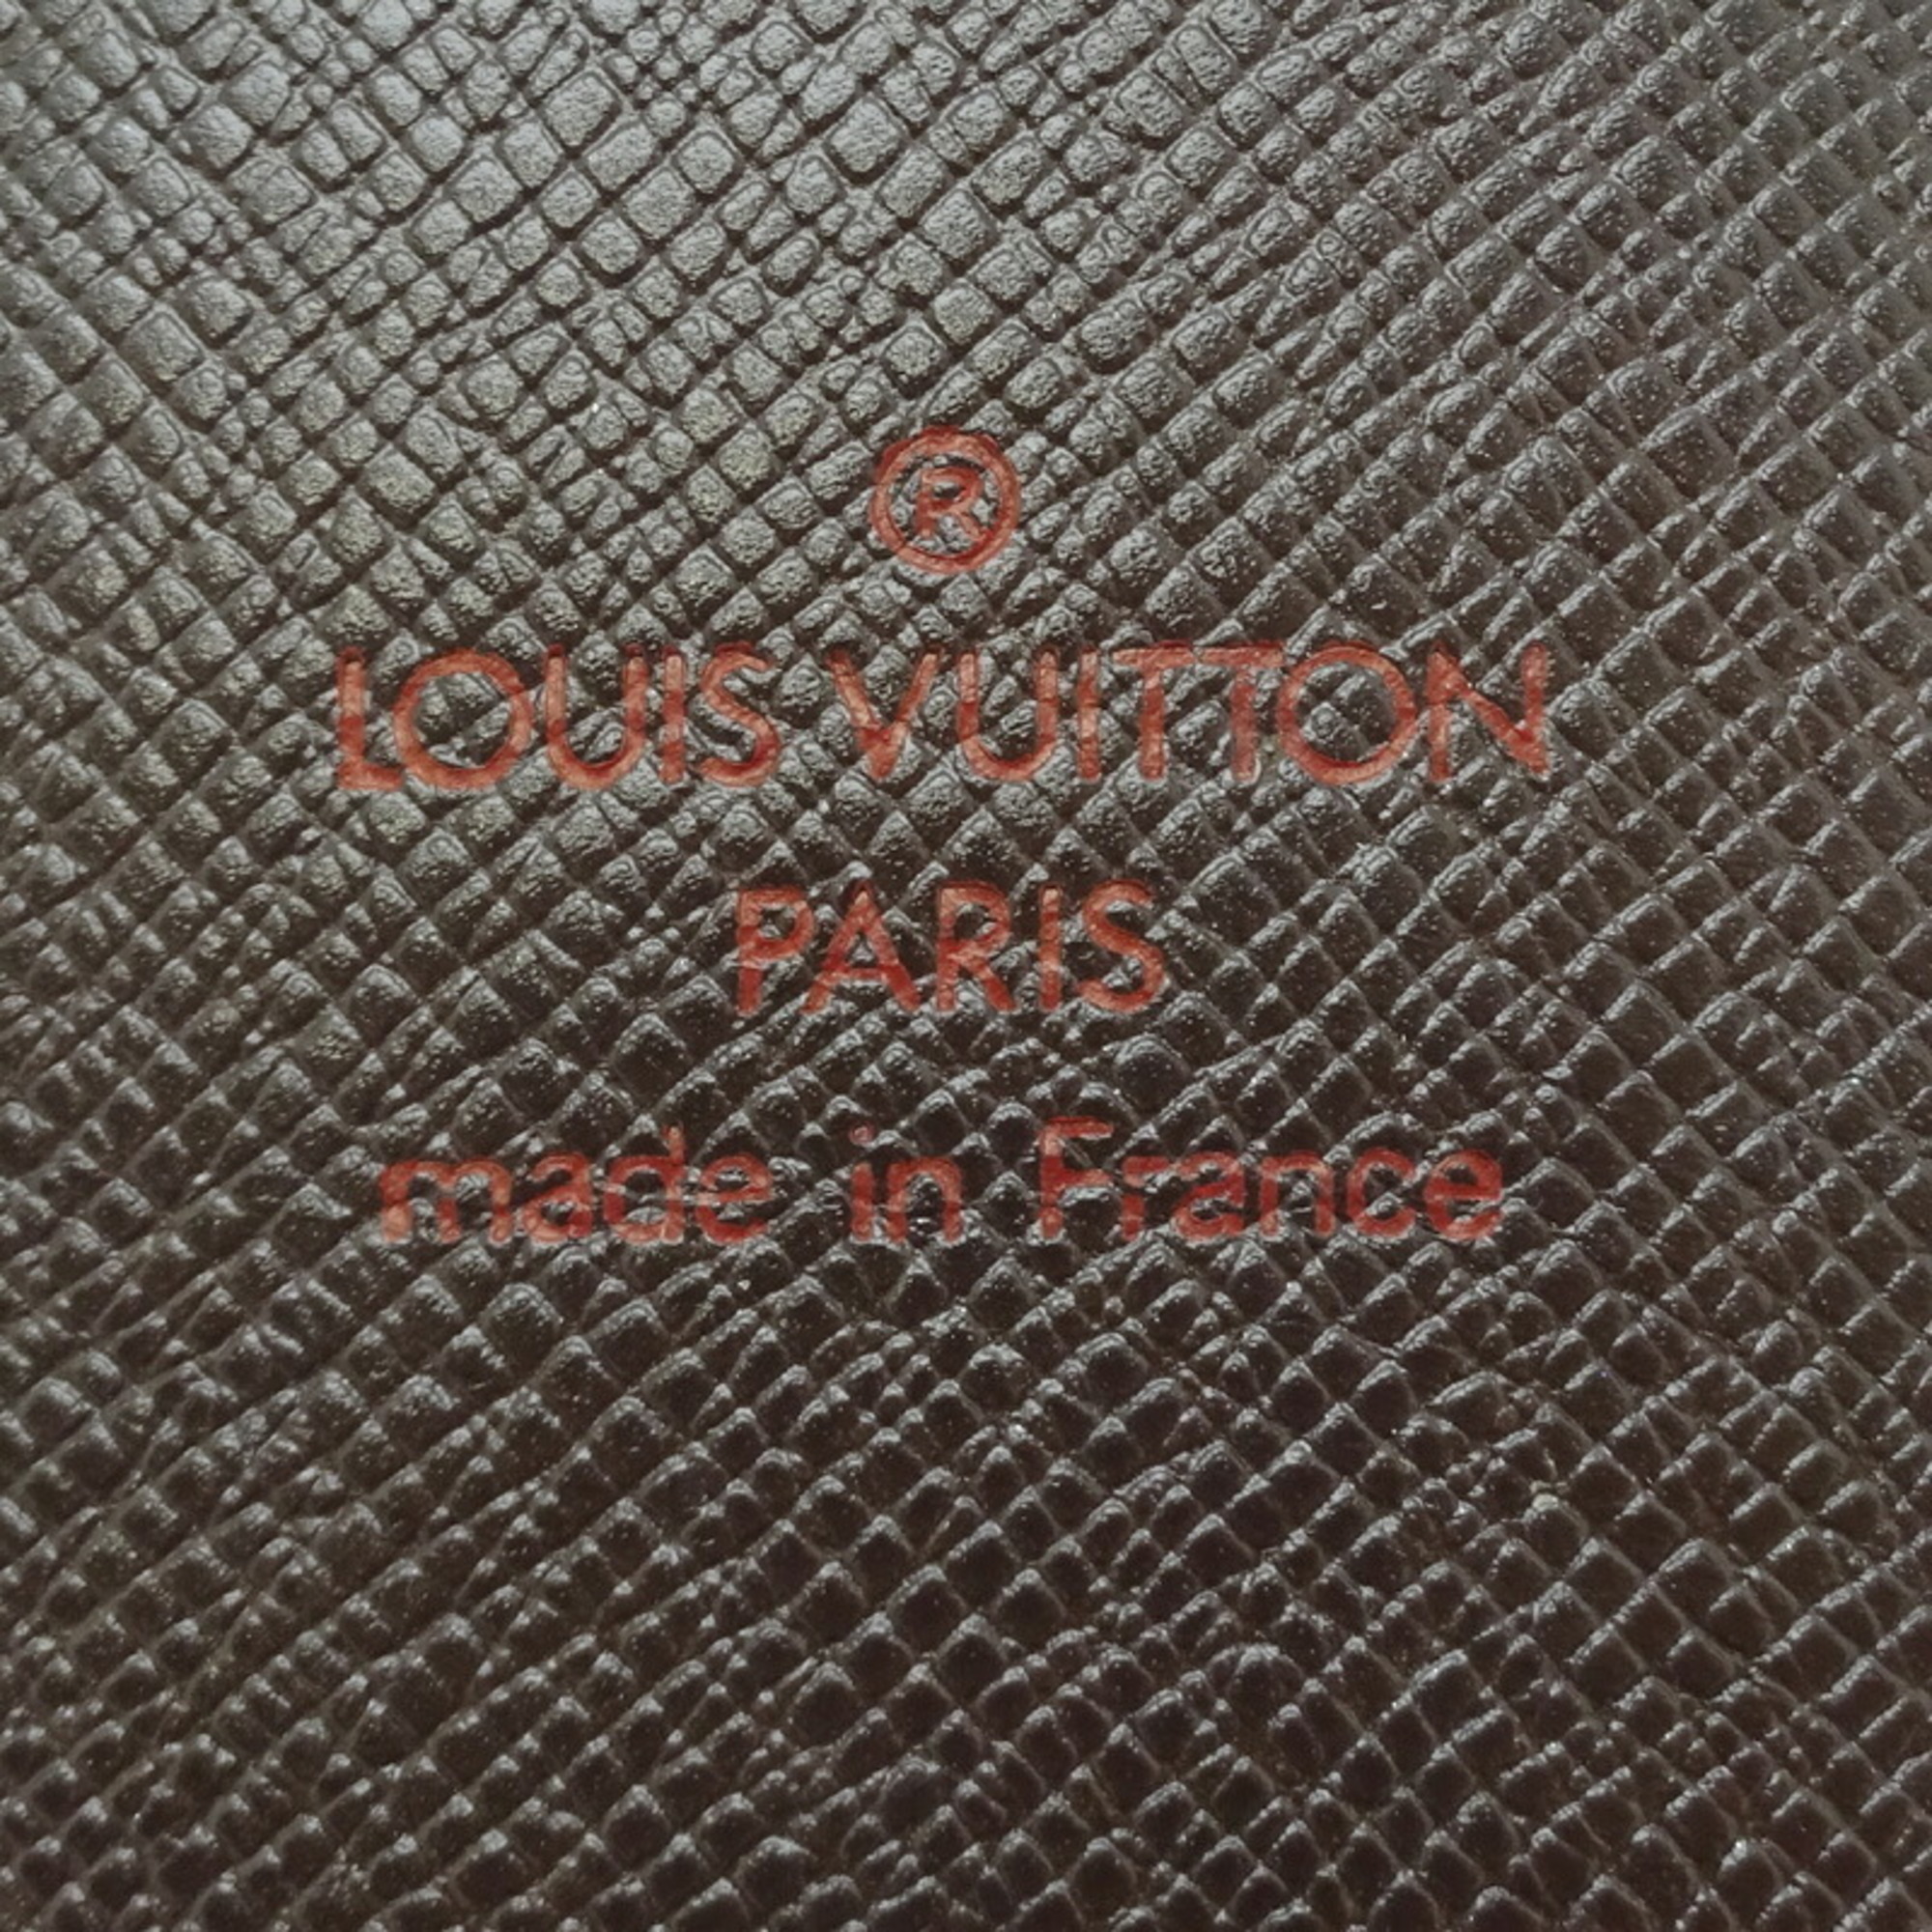 Louis Vuitton Cigarette Case Women's/Men's Accessories N63024 Damier Ebene (Brown)